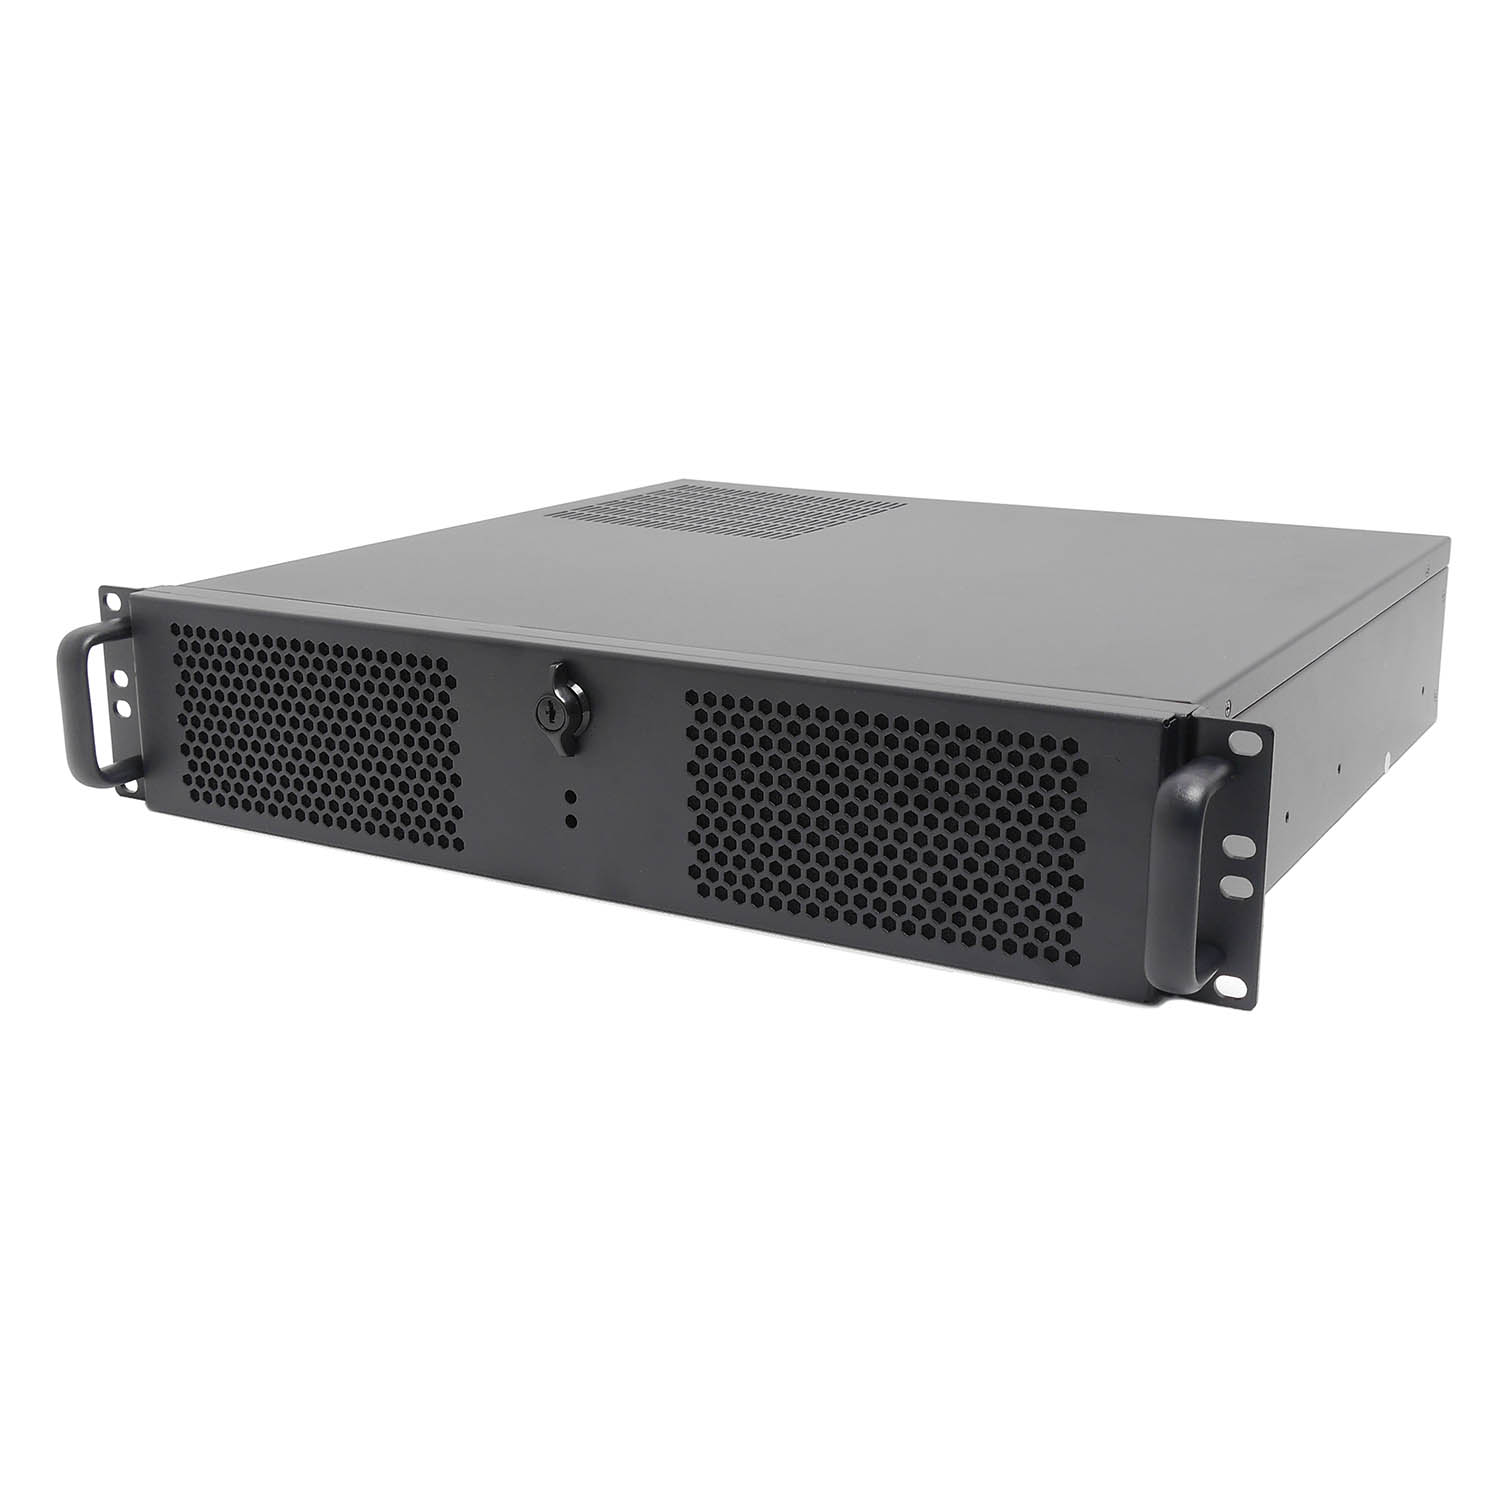 Серверный корпус 2U NR-N238CD 2x550Вт (mATX 9.6x9.6, 2x5.25ext, 4x3.5int, 400mm) черный, NegoRack